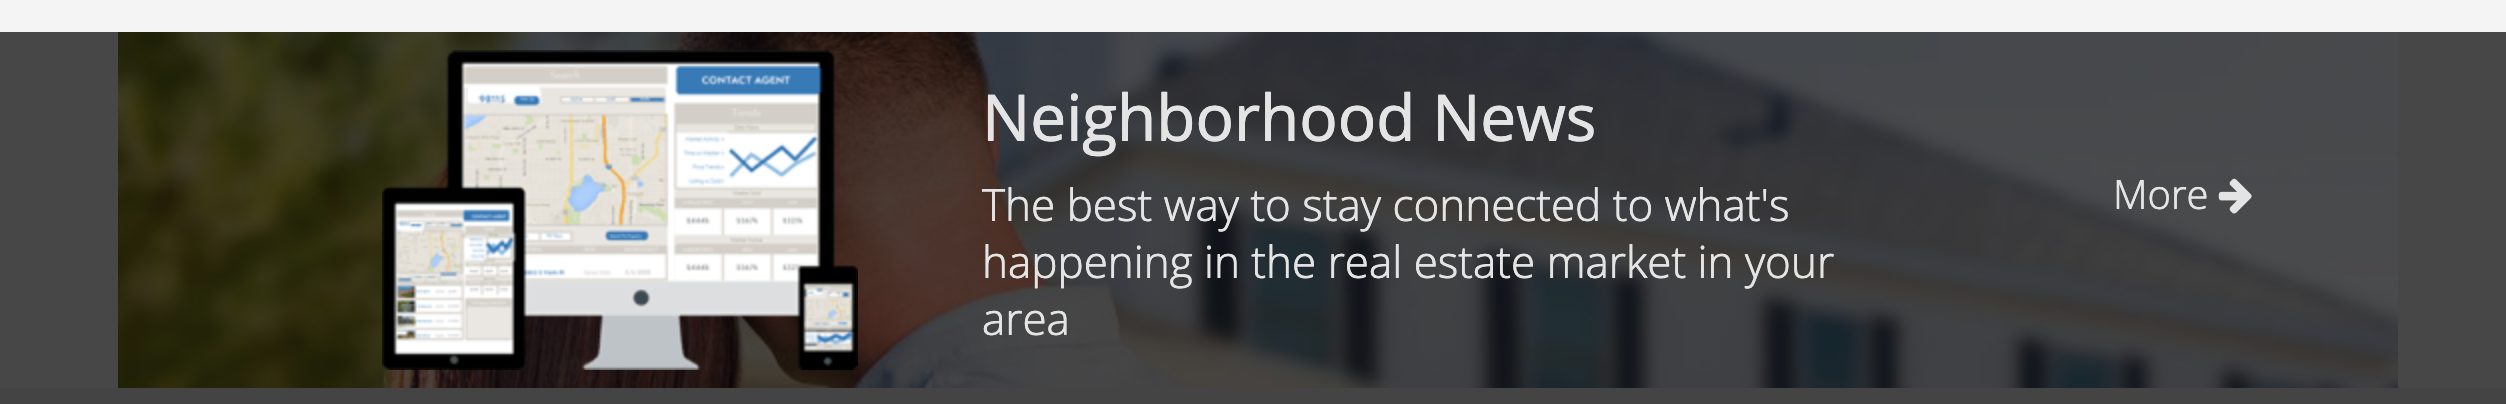 Neighborhood News Image